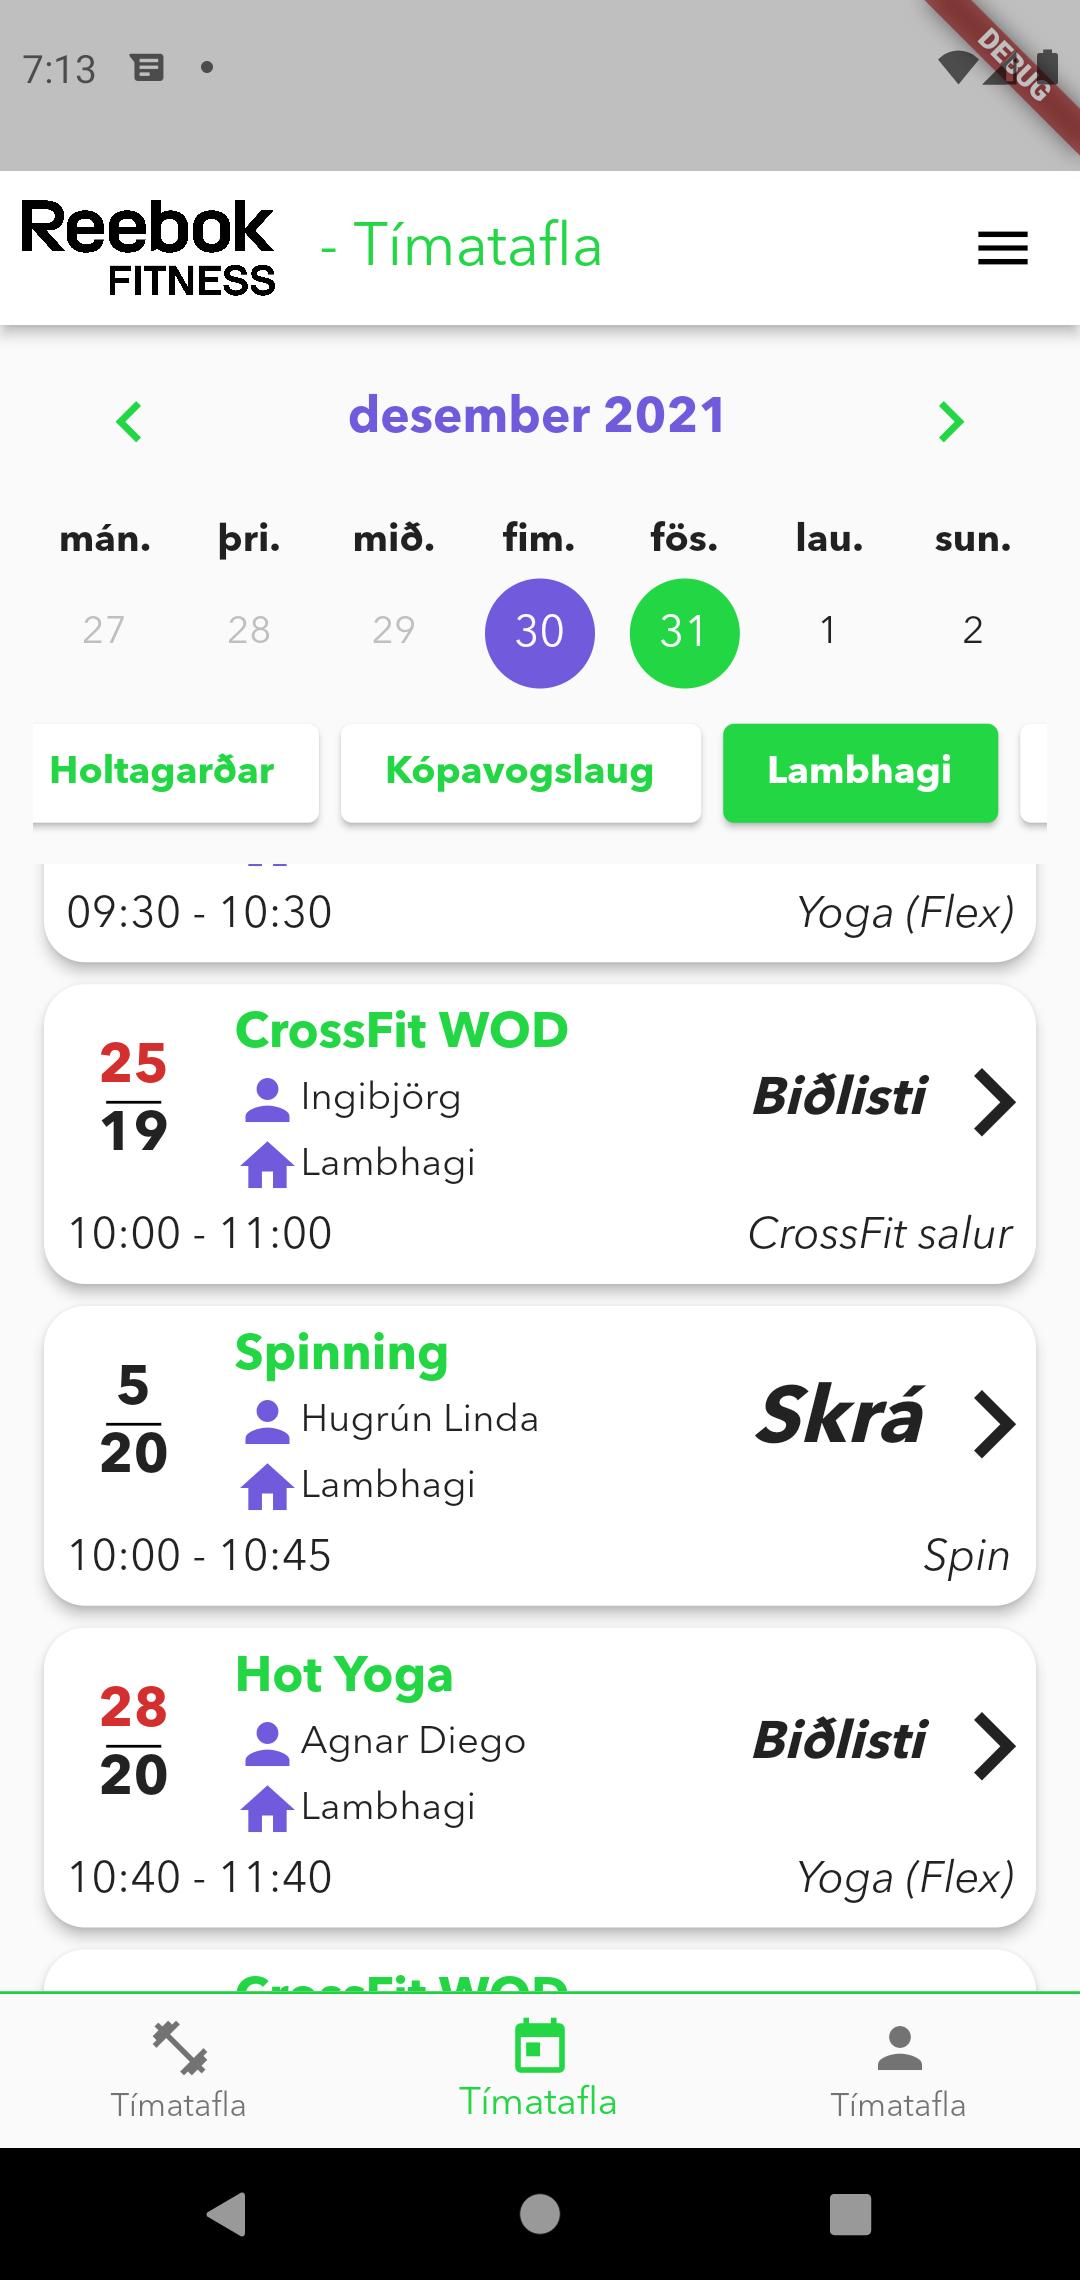 Reebok Fitness Ísland APK for Android Download